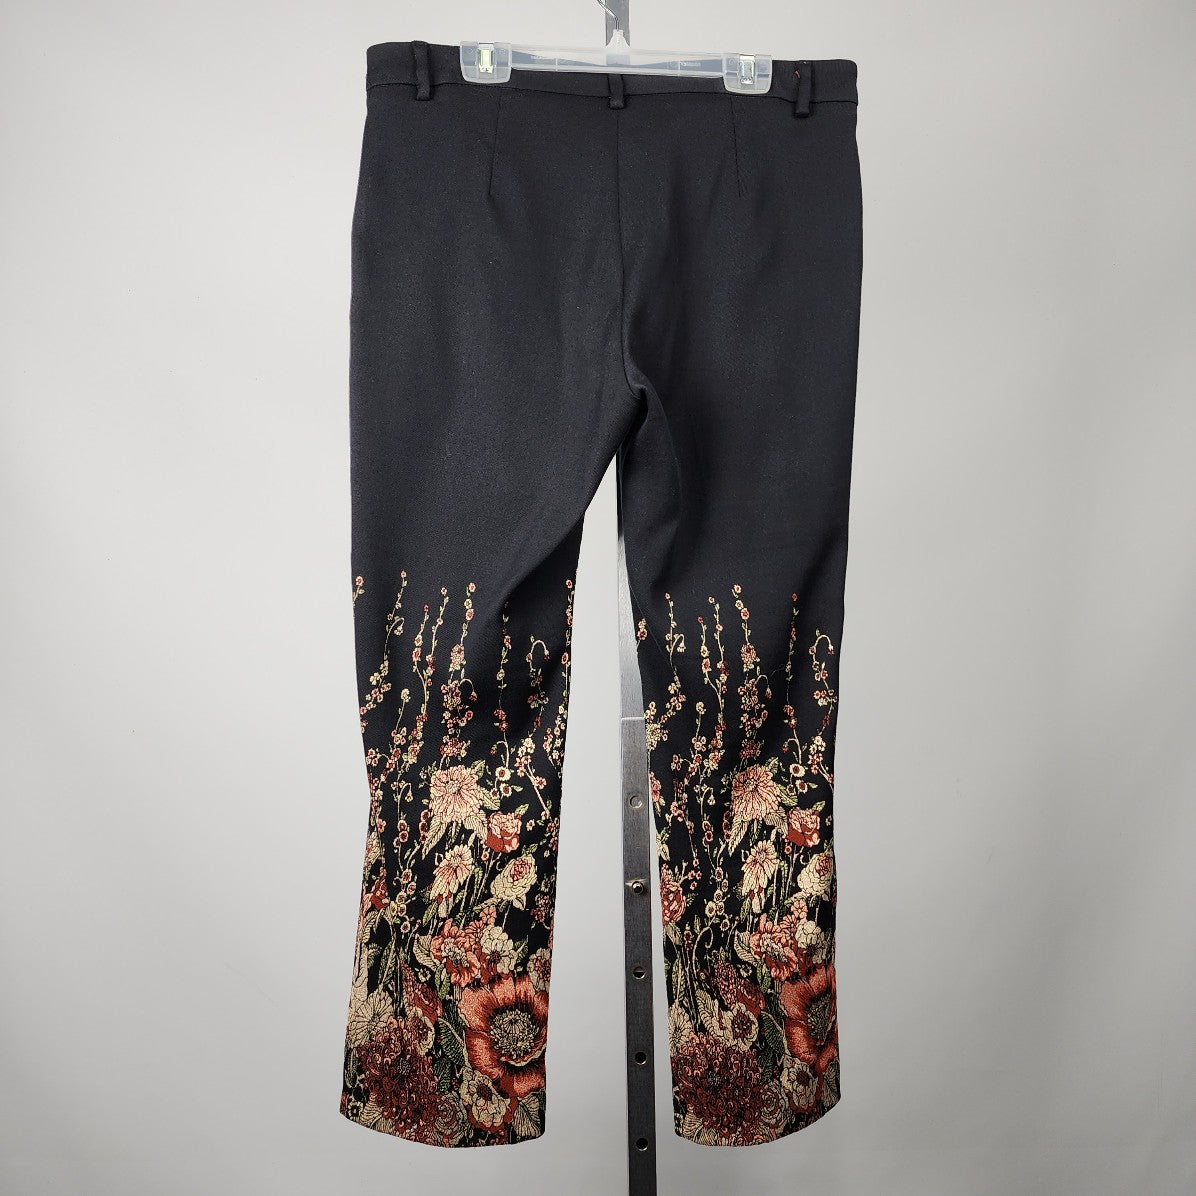 Seductive Black Floral Print Straight Leg Pants Size 12